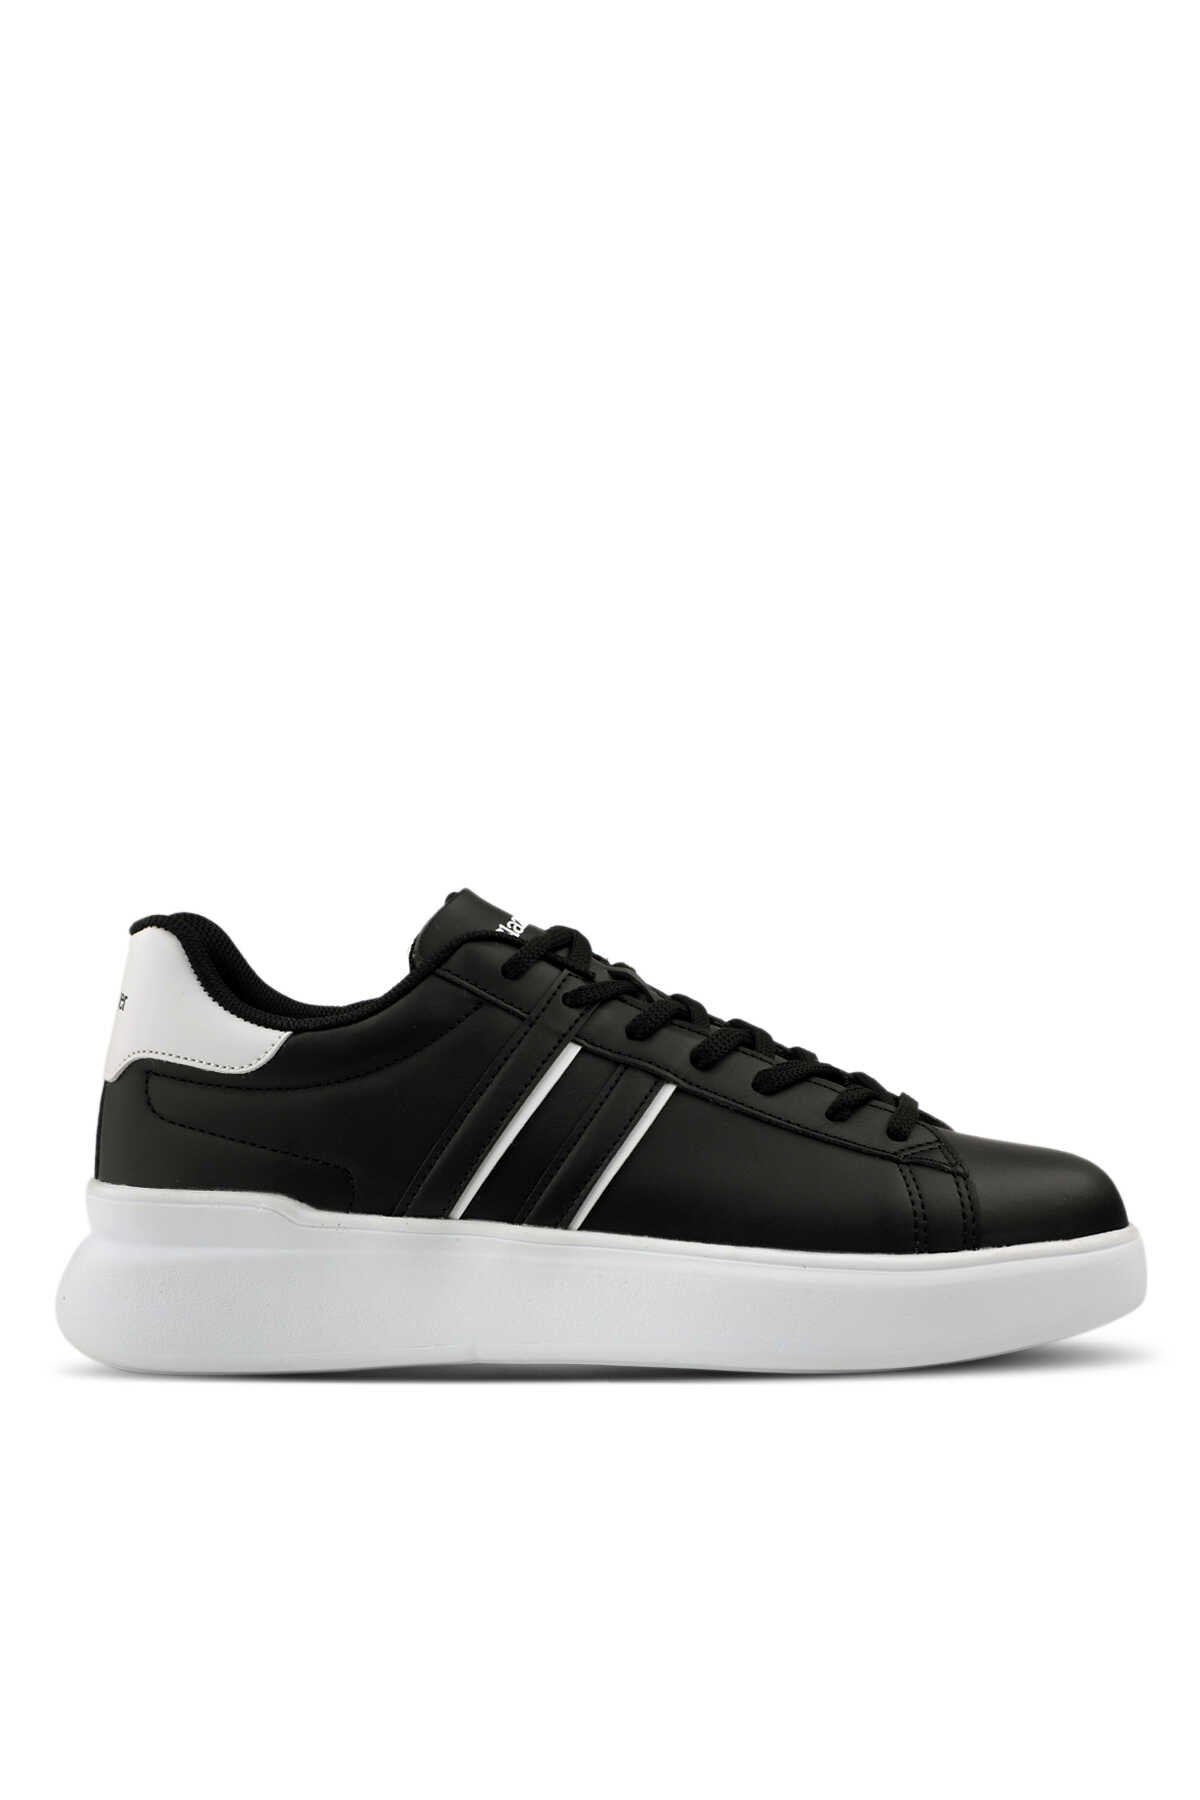 Slazenger - Slazenger BALTAZAR Sneaker Erkek Ayakkabı Siyah / Beyaz